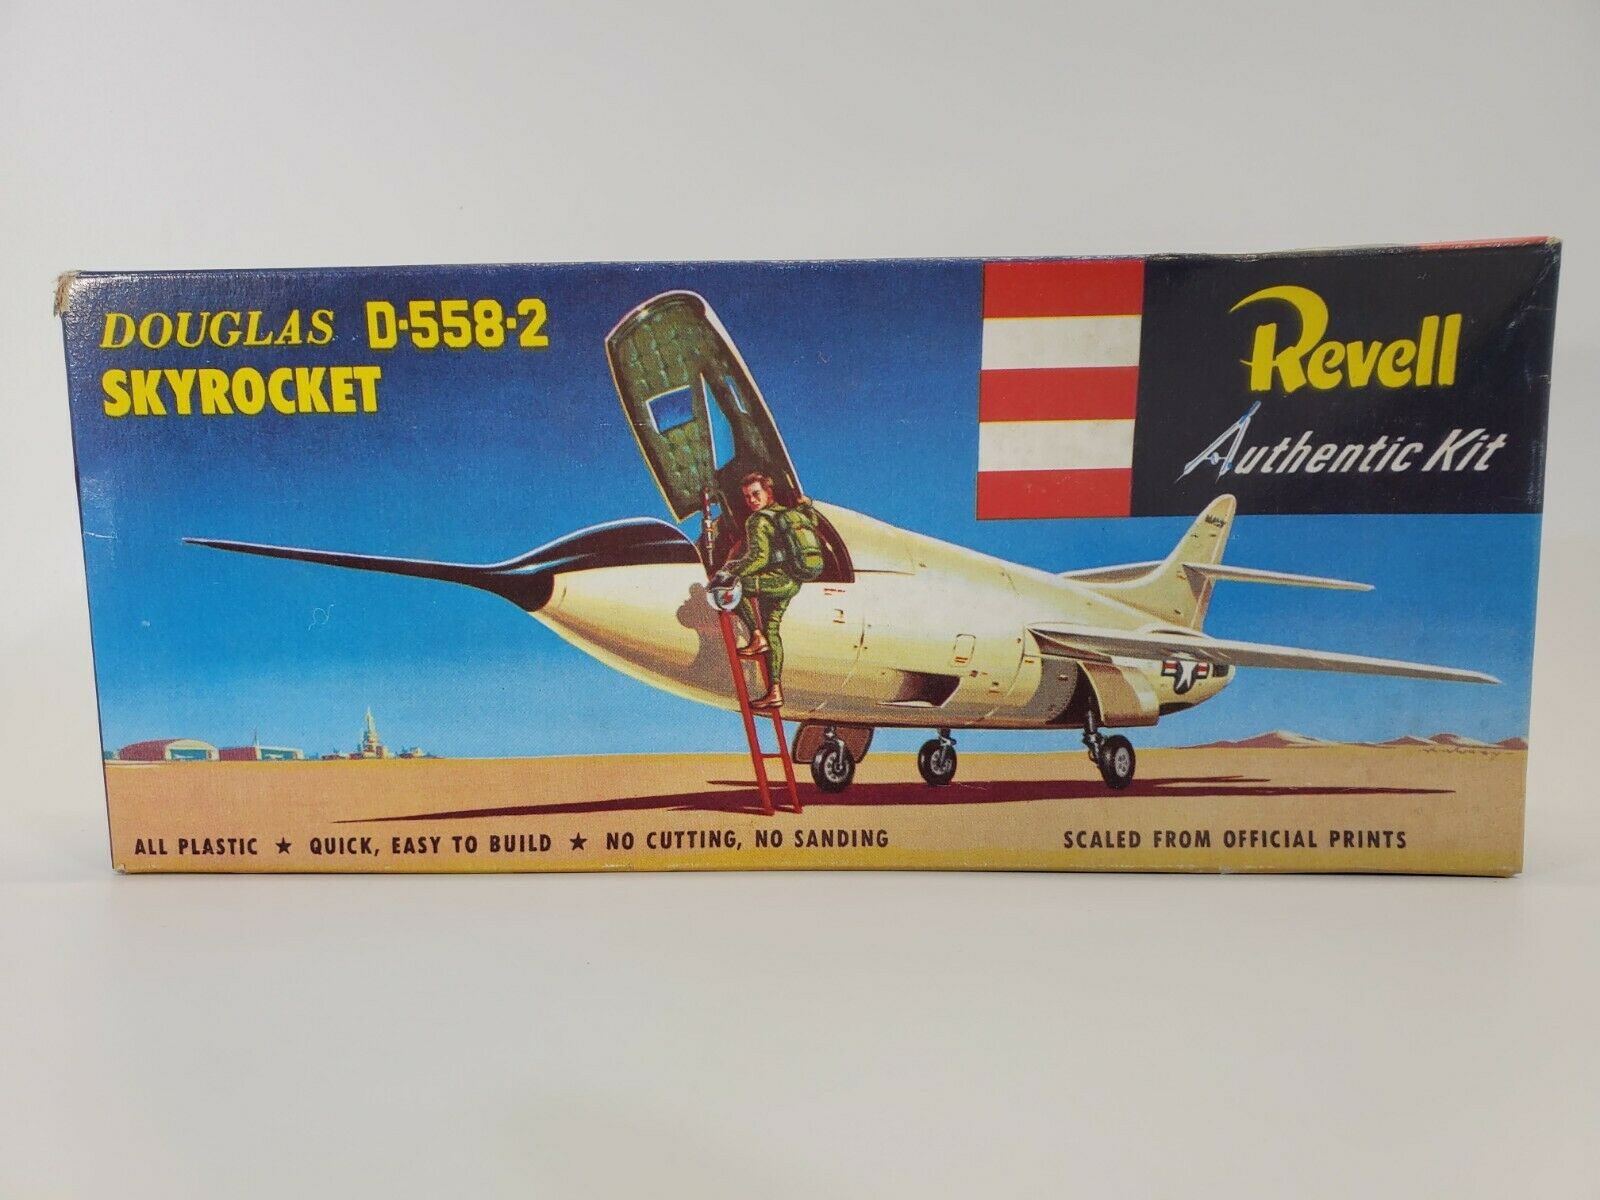 Sdg Revell H213-79 Douglas D-558-2 Skyrocket Jet Plane 1/72 Scale Model Kit New